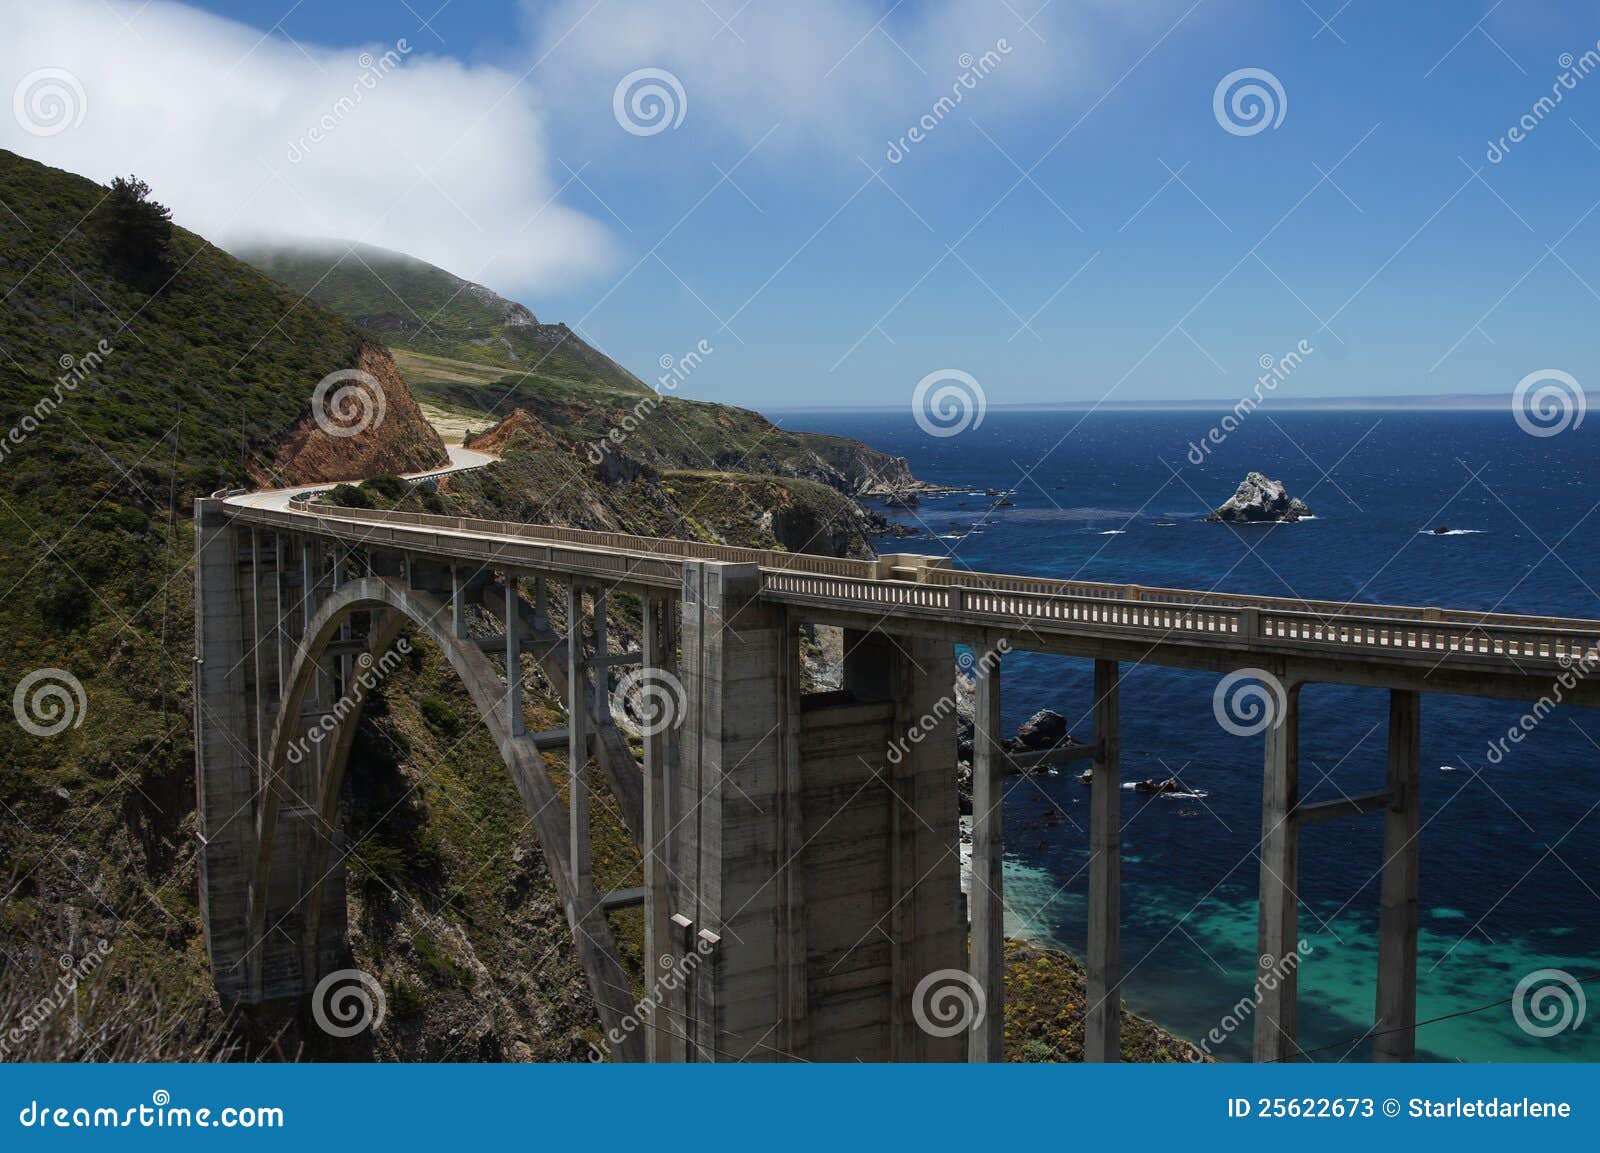 bixby bridge california coast